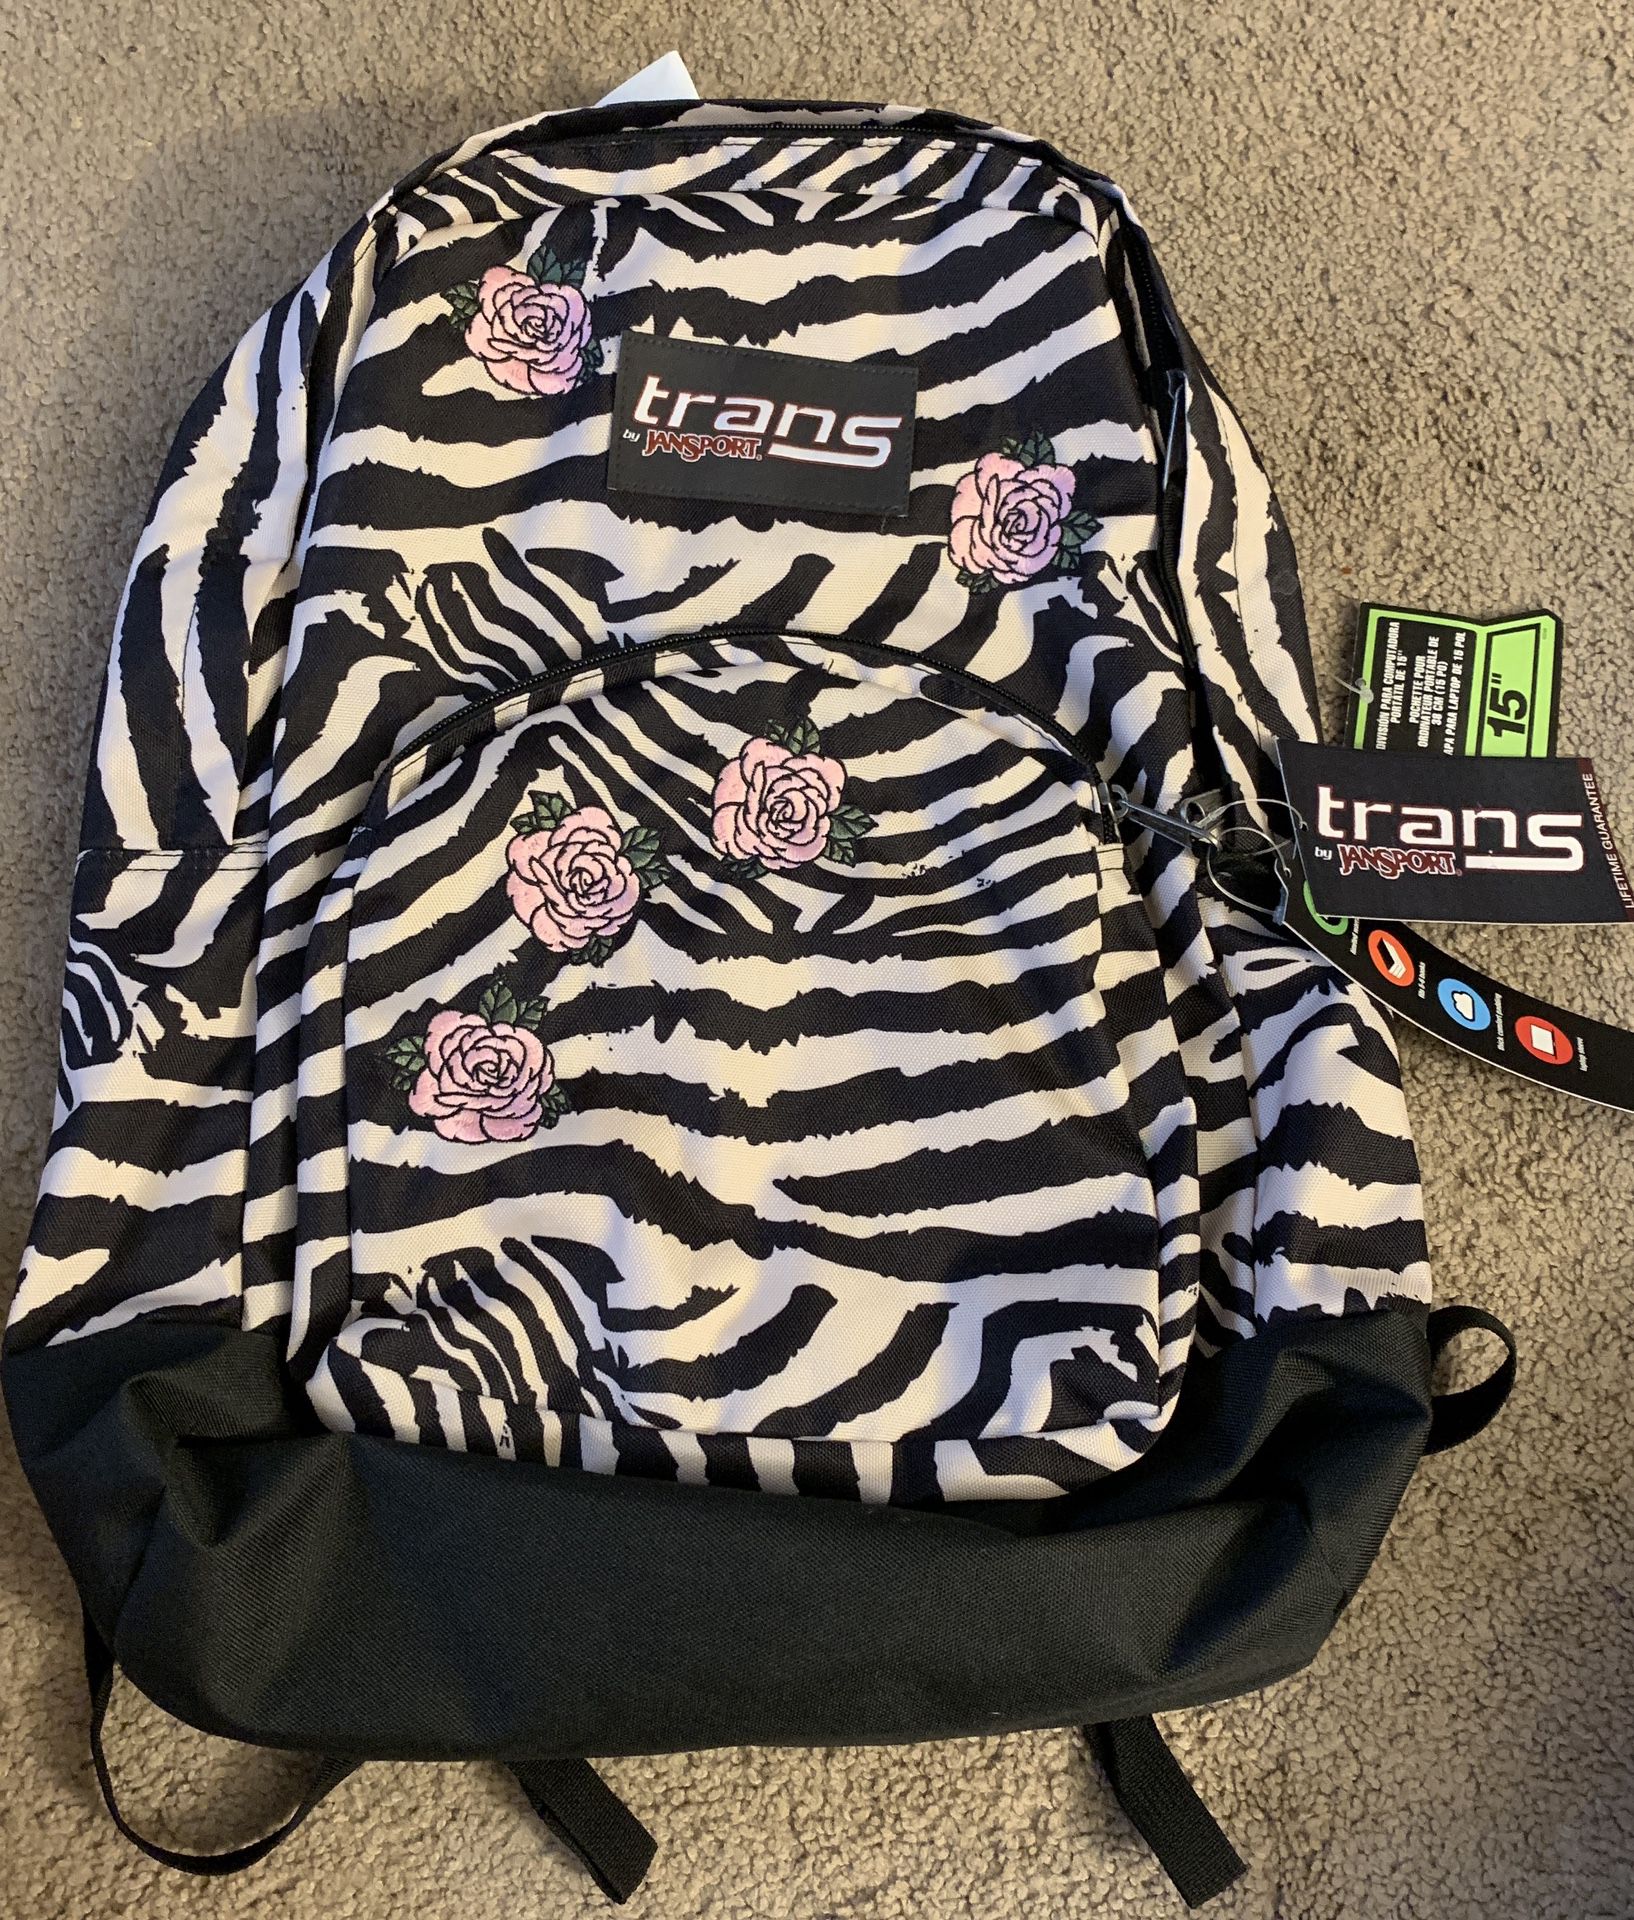 Trans JanSport 17.5" Overt Backpack Laptop Sleeve Zebra Rose Kids Book Bag